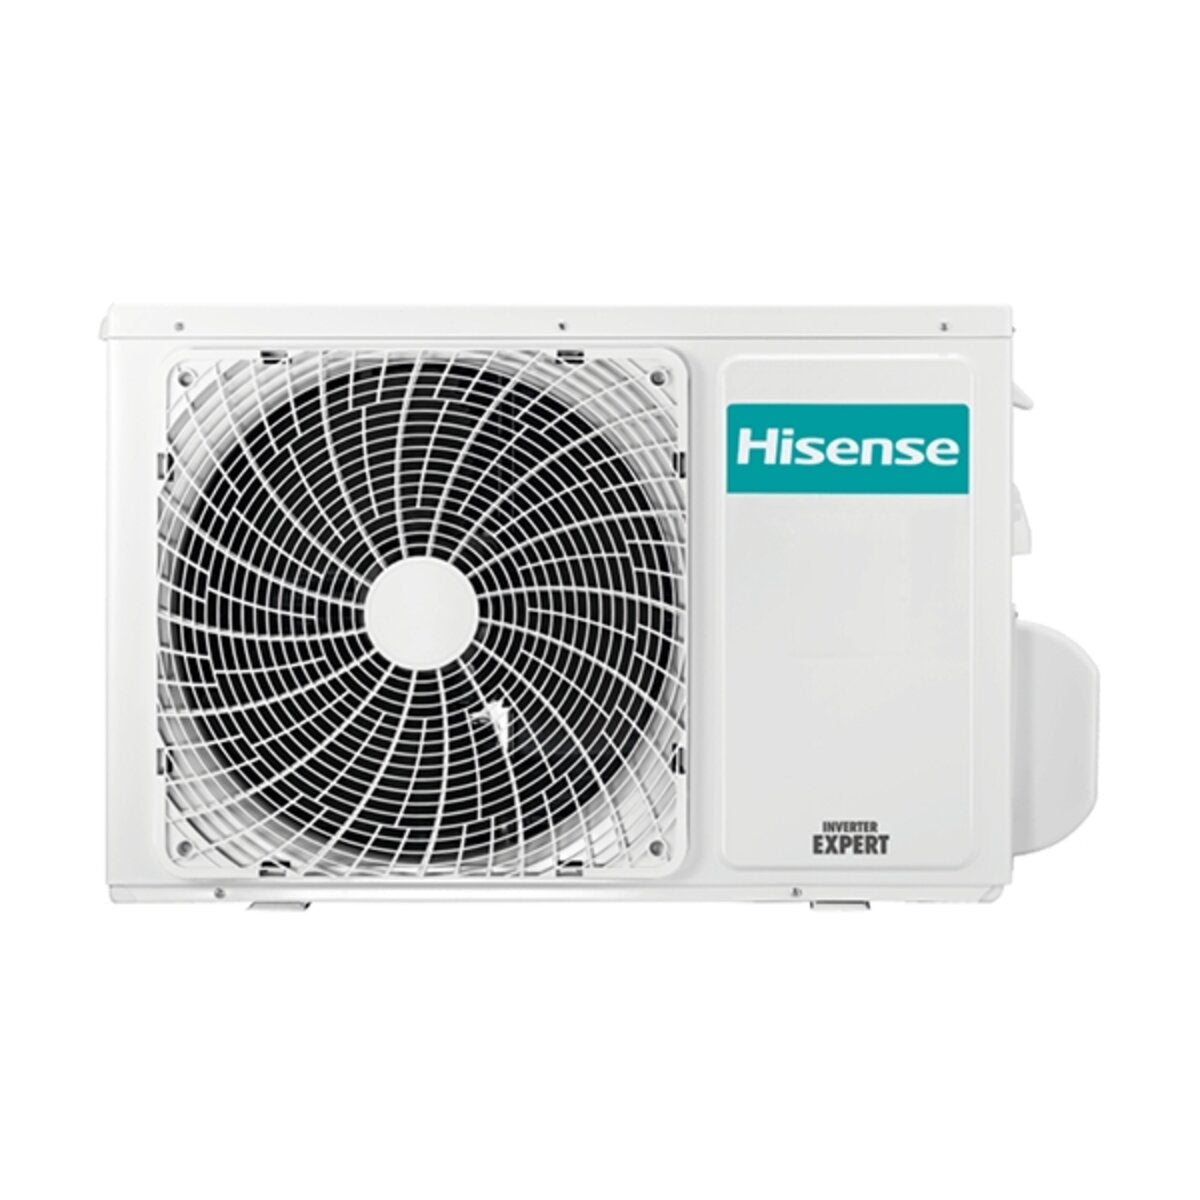 Hisense Hi-Comfort climatiseur double split 9000+9000 BTU onduleur A++ wifi unité extérieure 5.0 kW